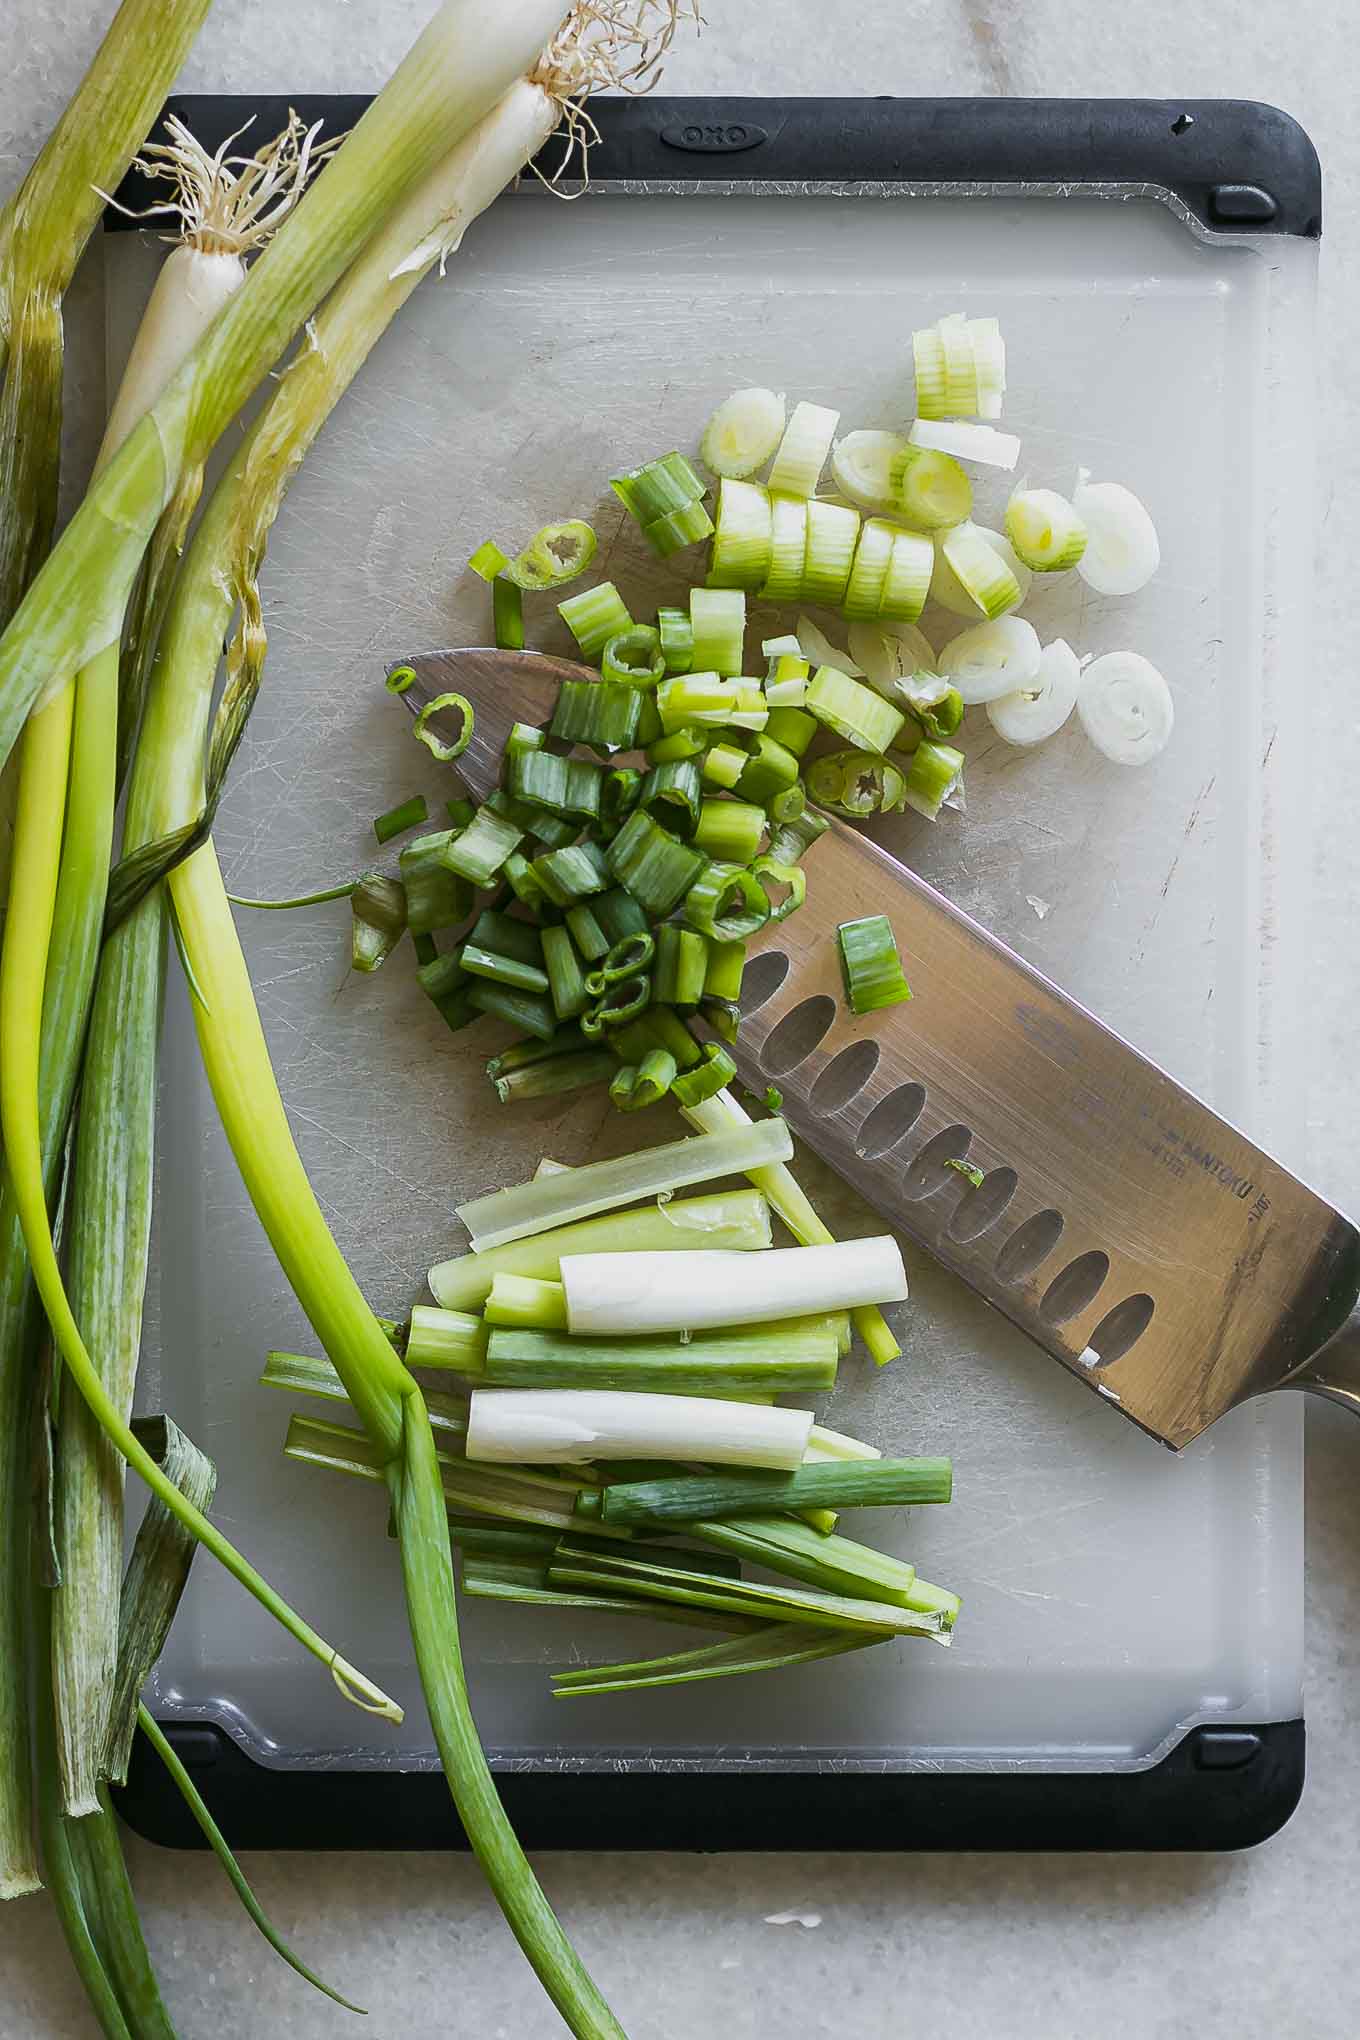 切成薄片和切成切菜板上的绿色洋葱的长矛GydF4y2Ba